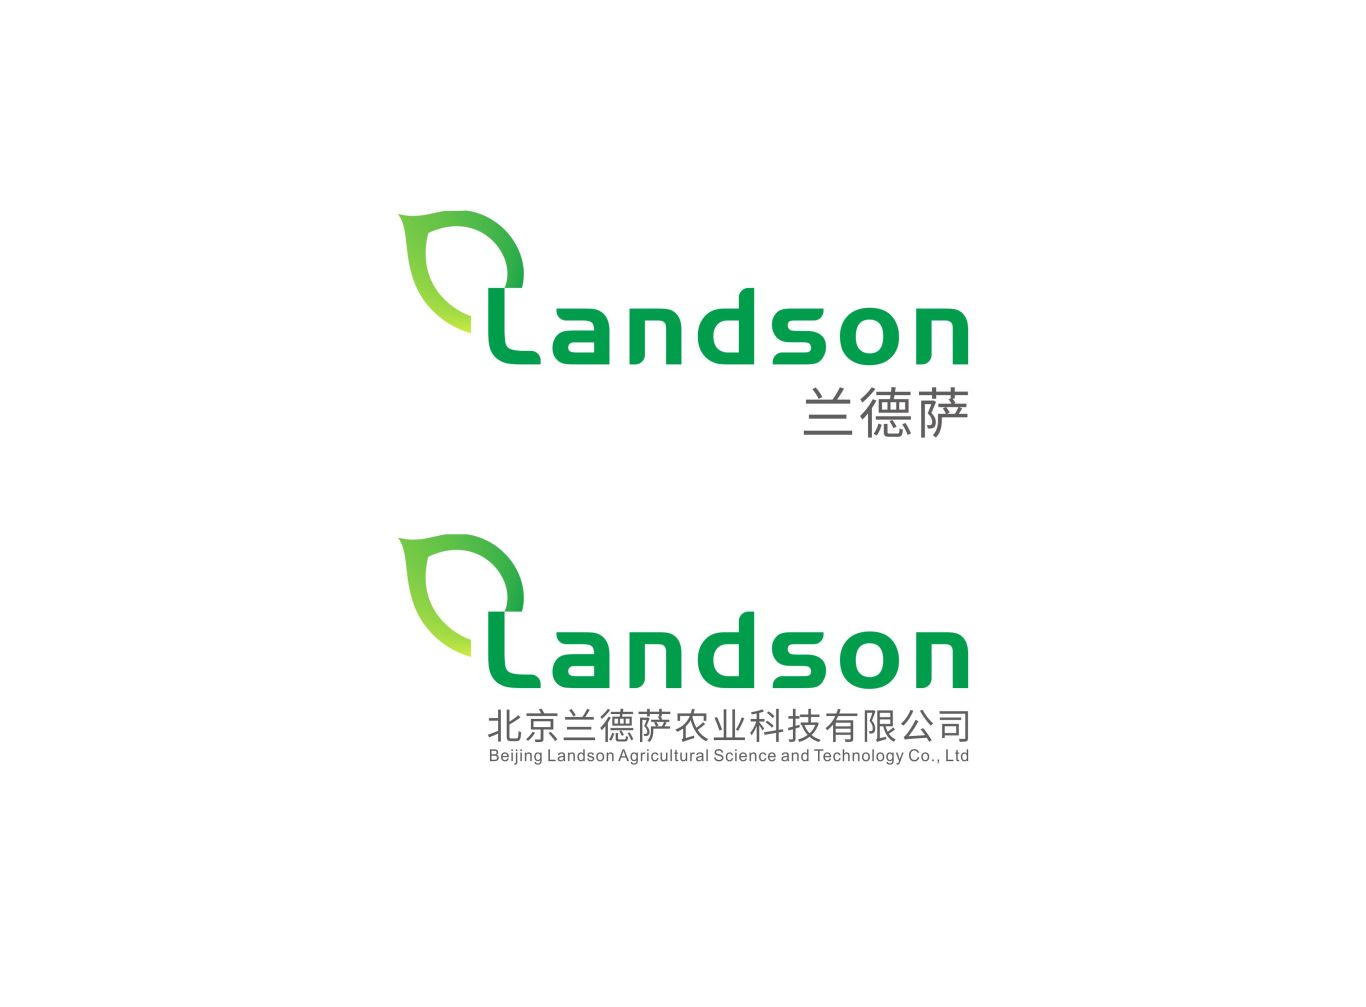 北京兰德萨农业科技有限公司品牌形象设计图1